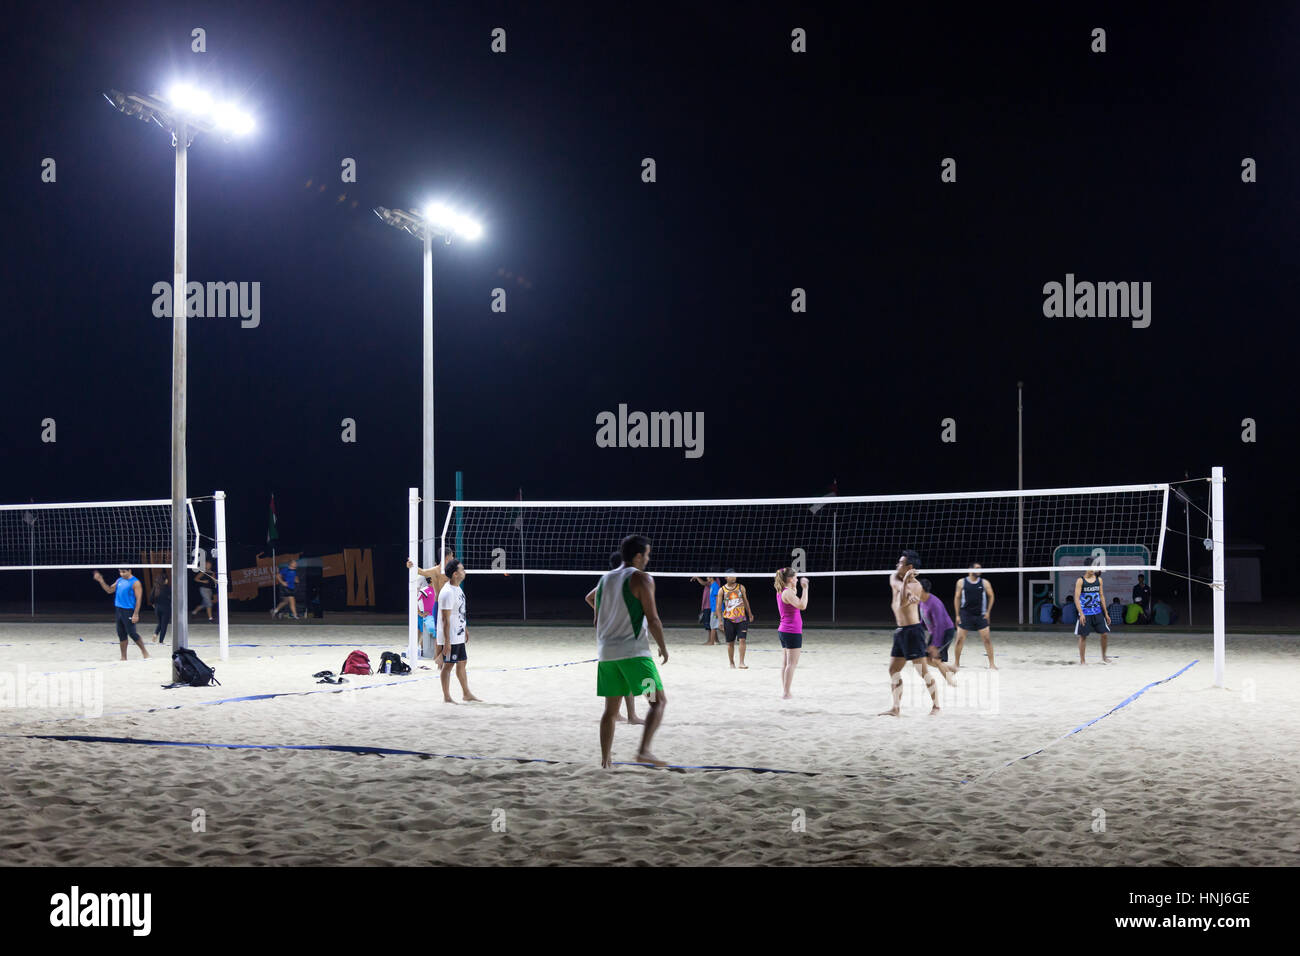 DUBAI, UAE - DEC 5, 2016: Beach Volleyball at night the Kite Beach in Jumeirah. Dubai, United Arab Emirates Stock Photo